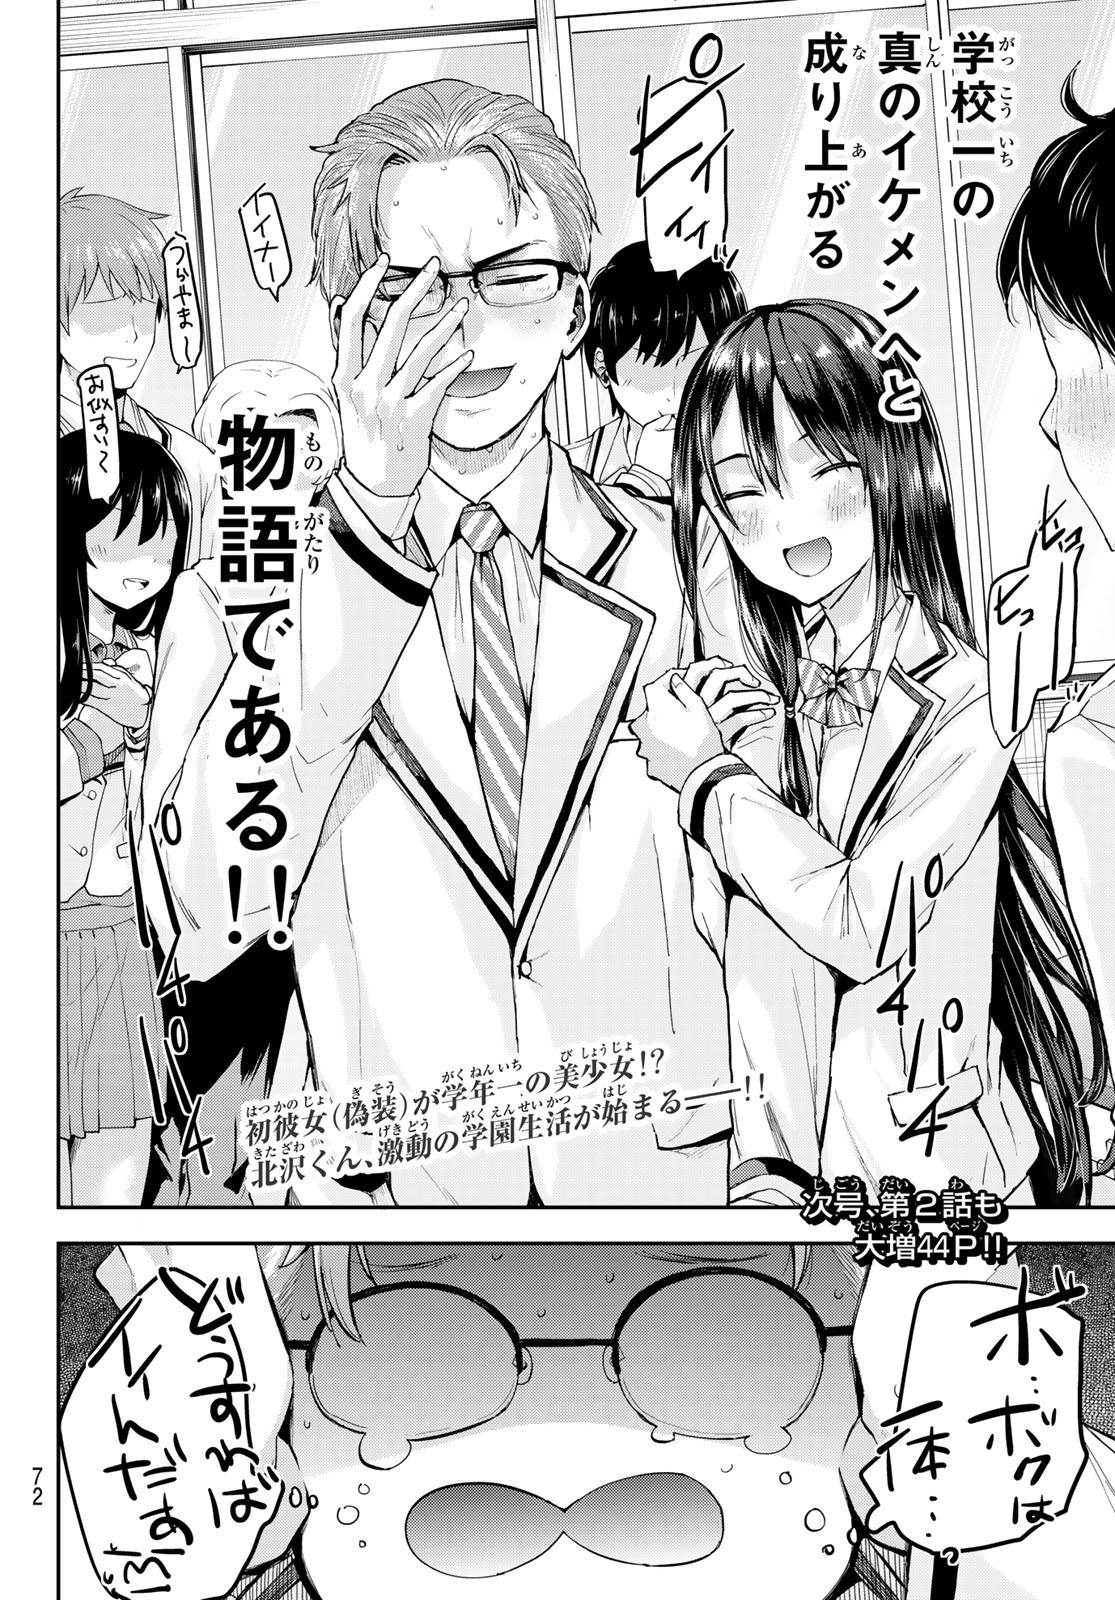 Kitazawa-kun wa A Class - Chapter 001 - Page 57